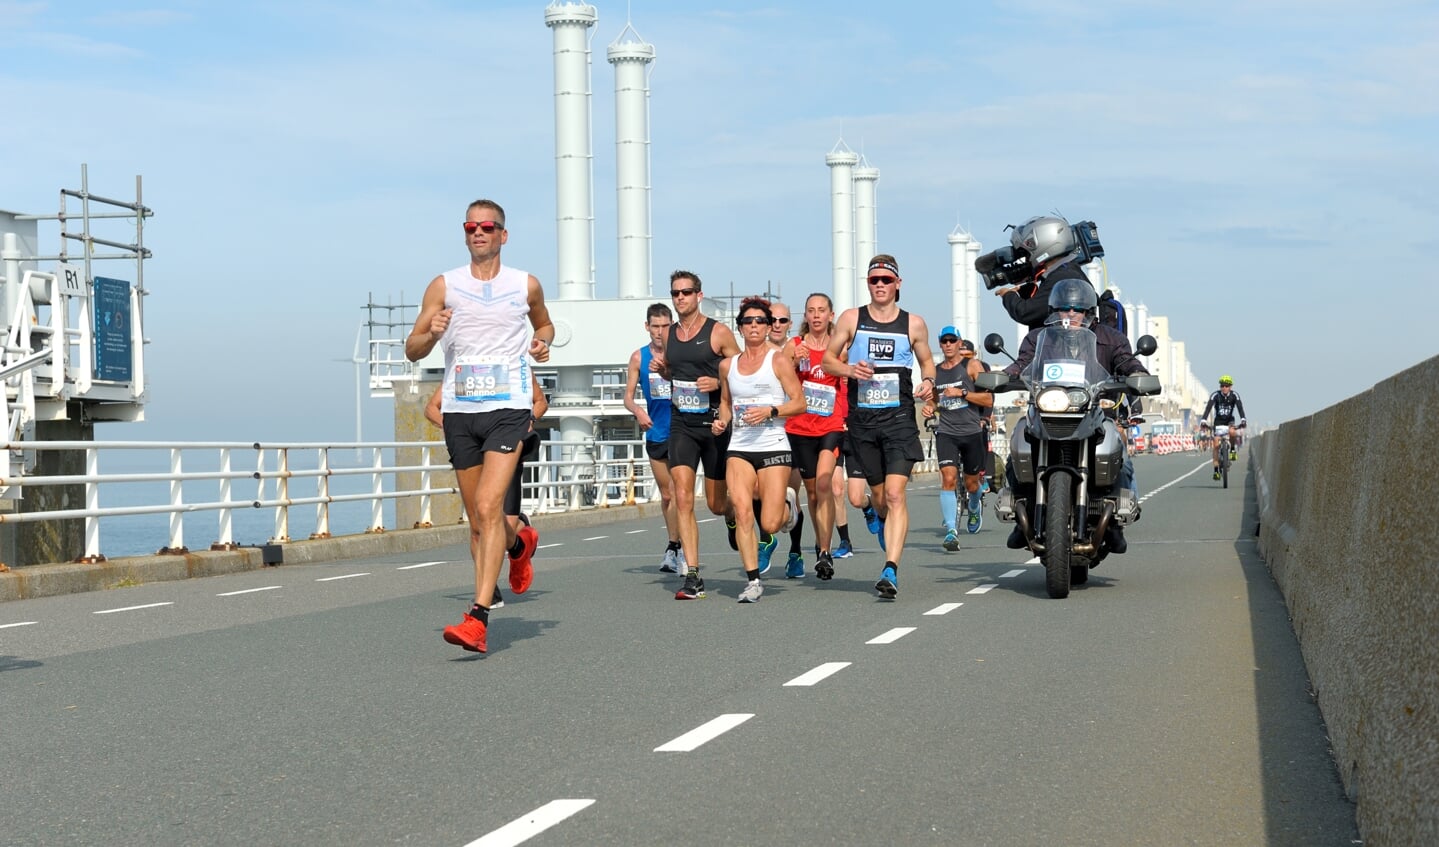 De kustmarathon werd op zaterdag 7 oktober gerend. 